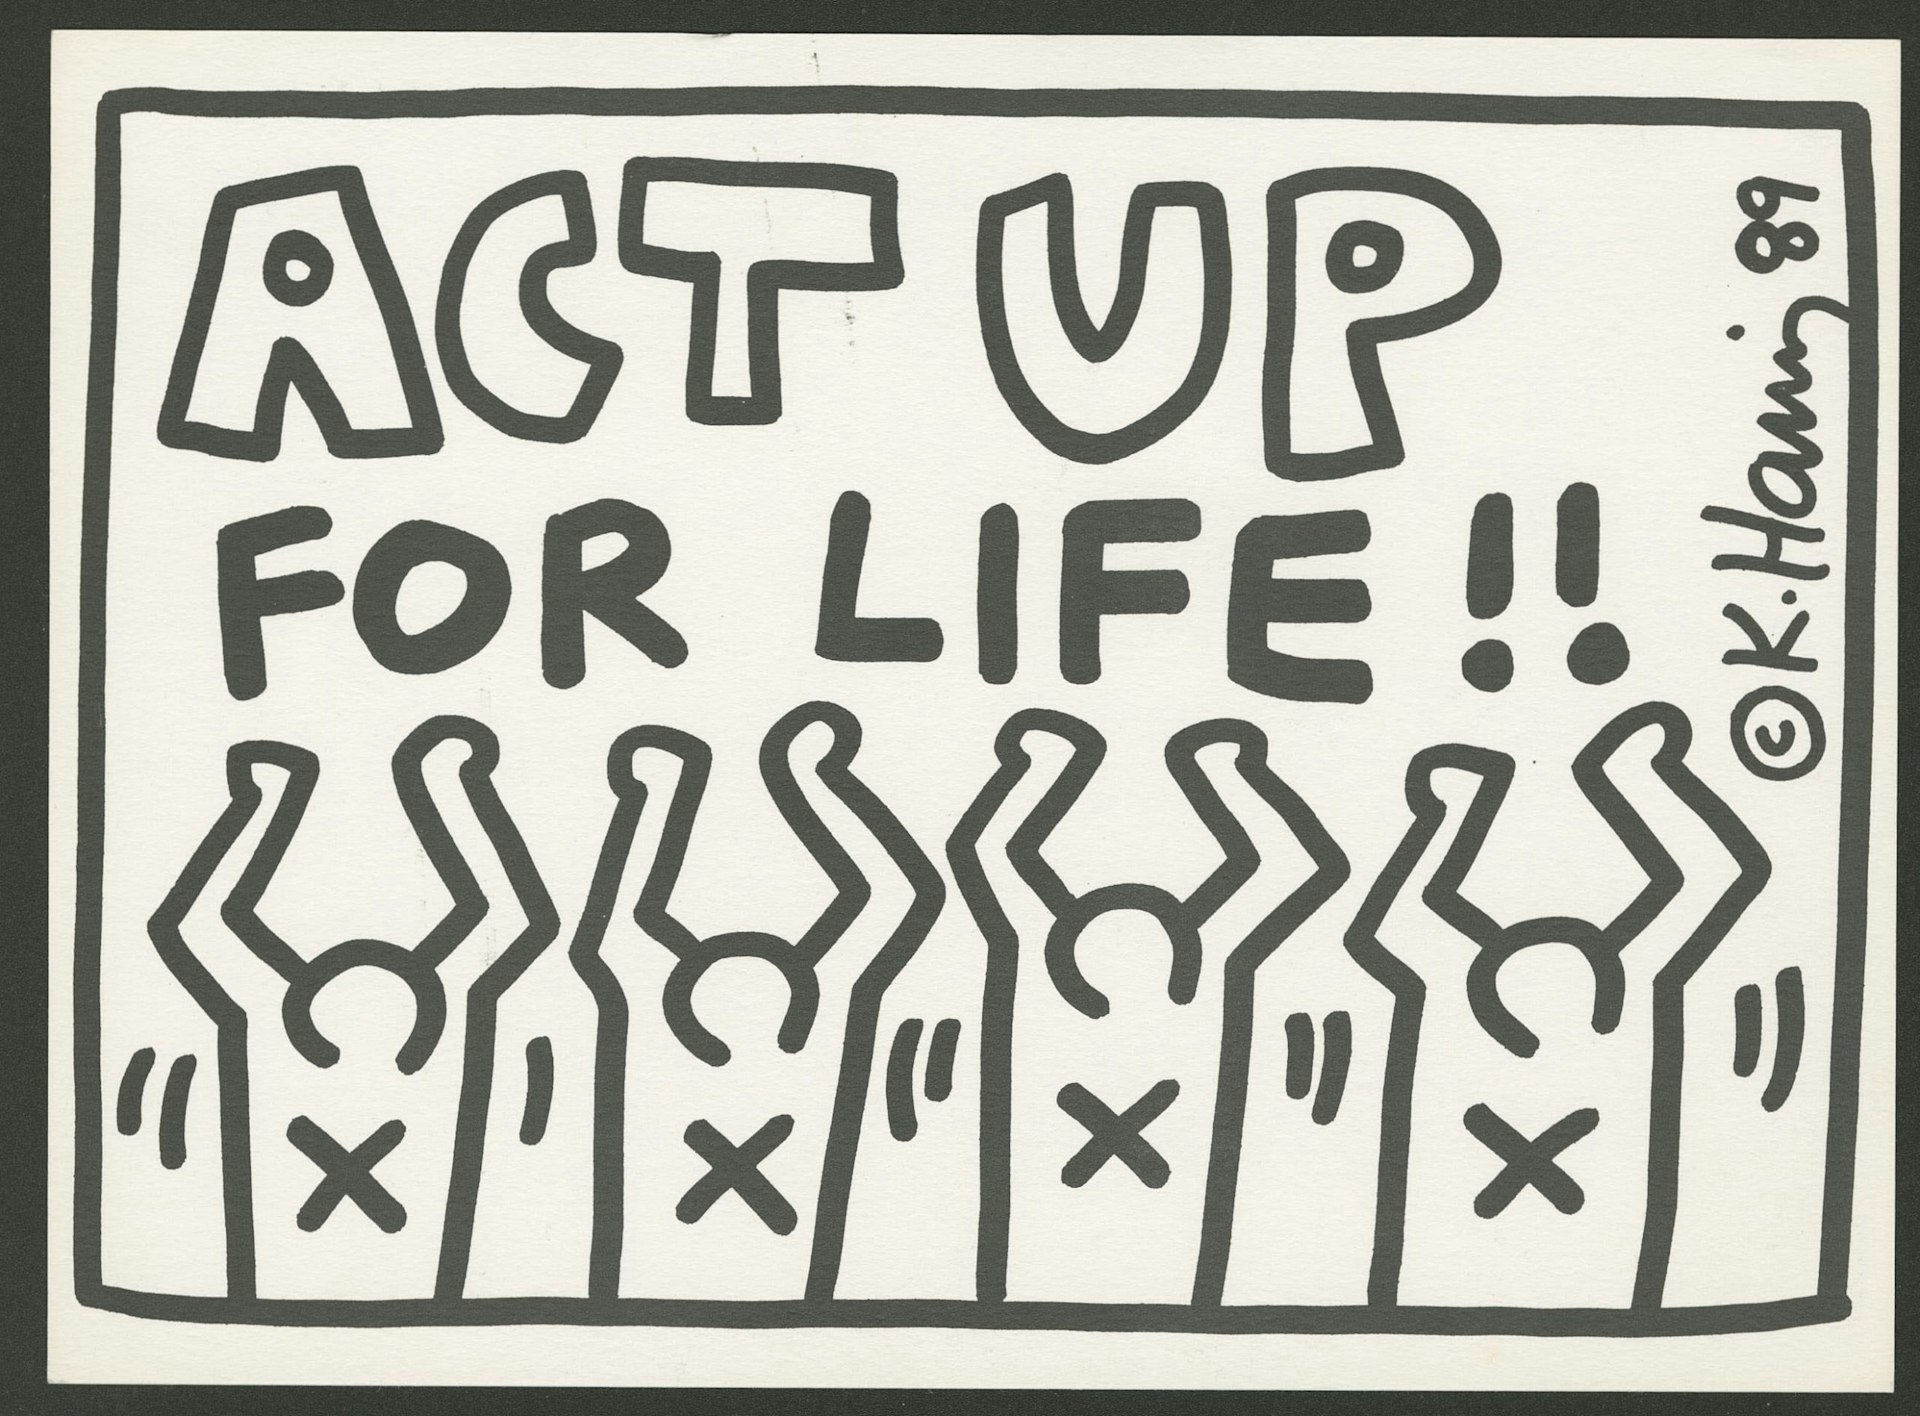 Keith Haring Act Up